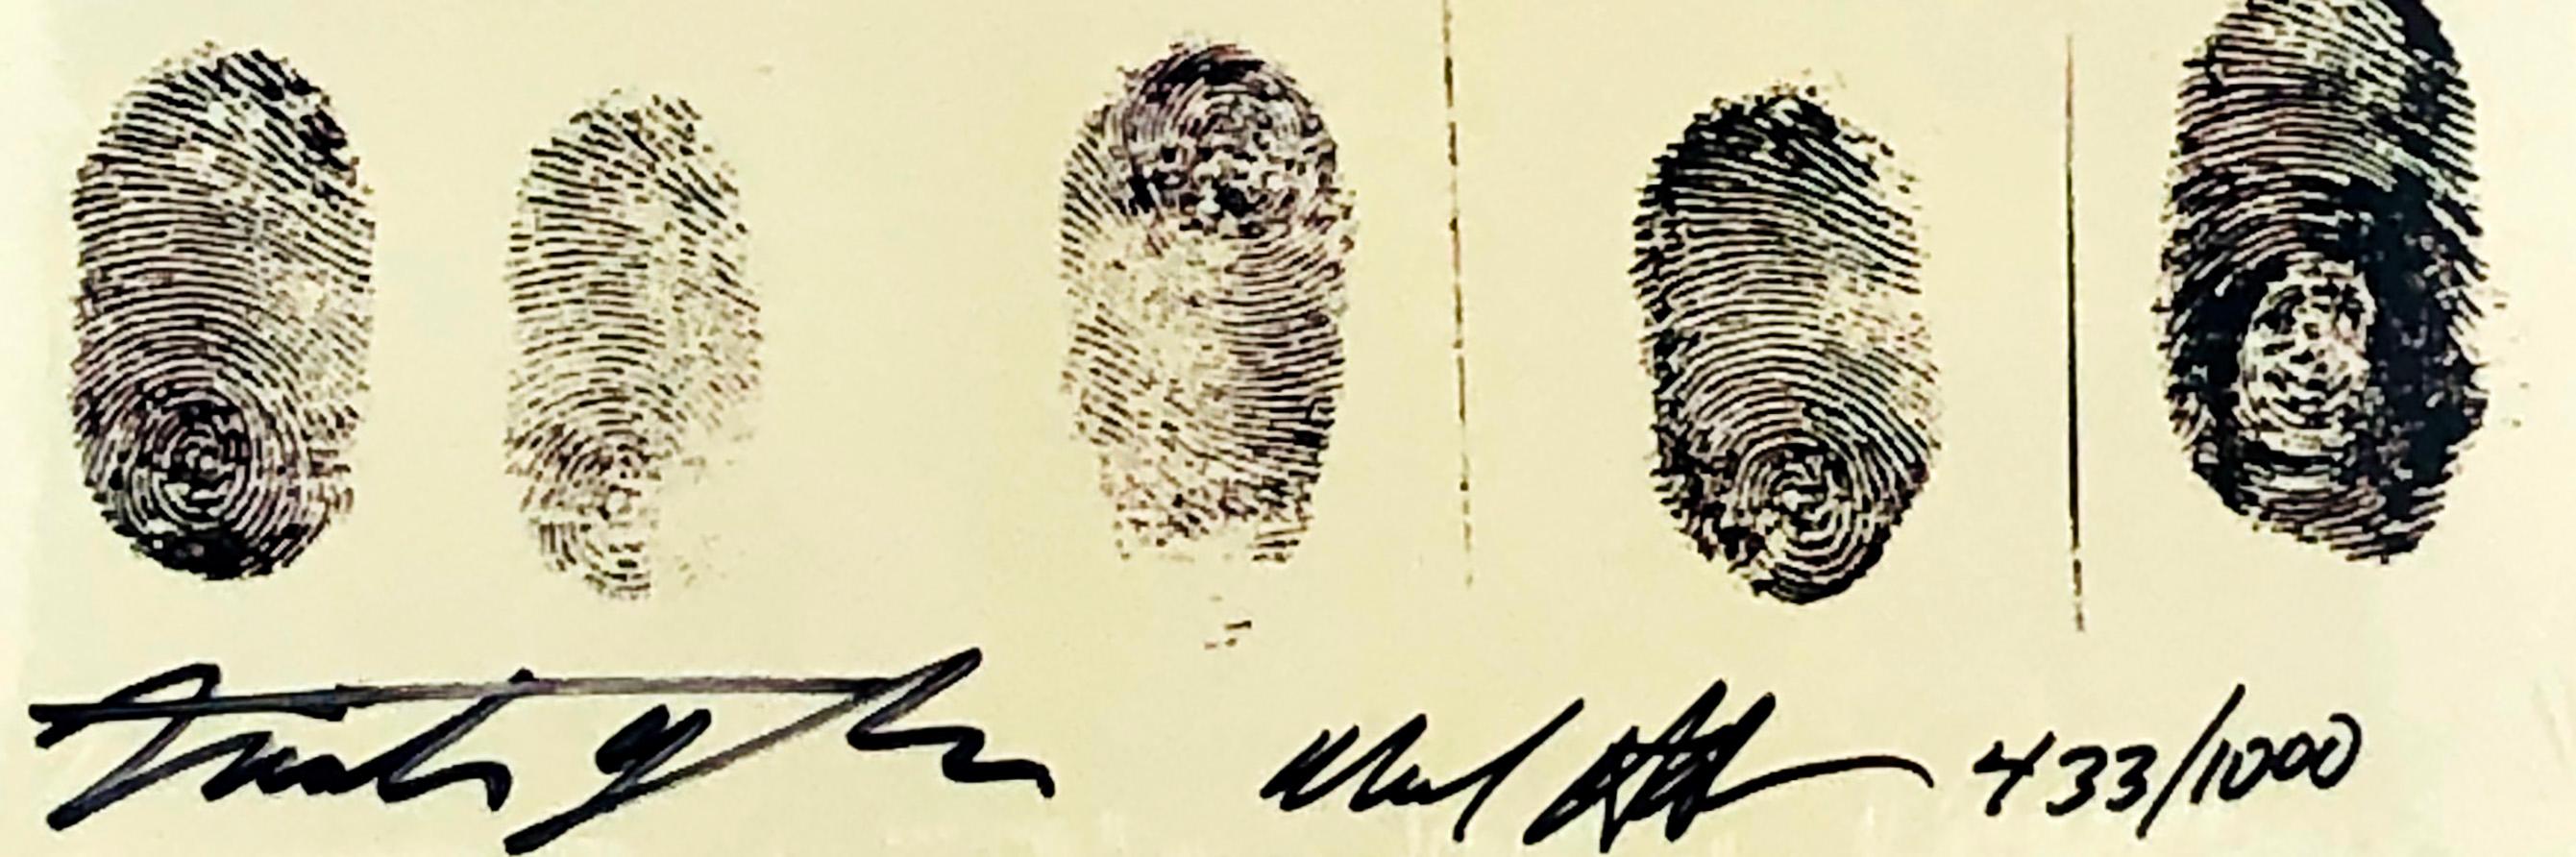 rare fingerprint